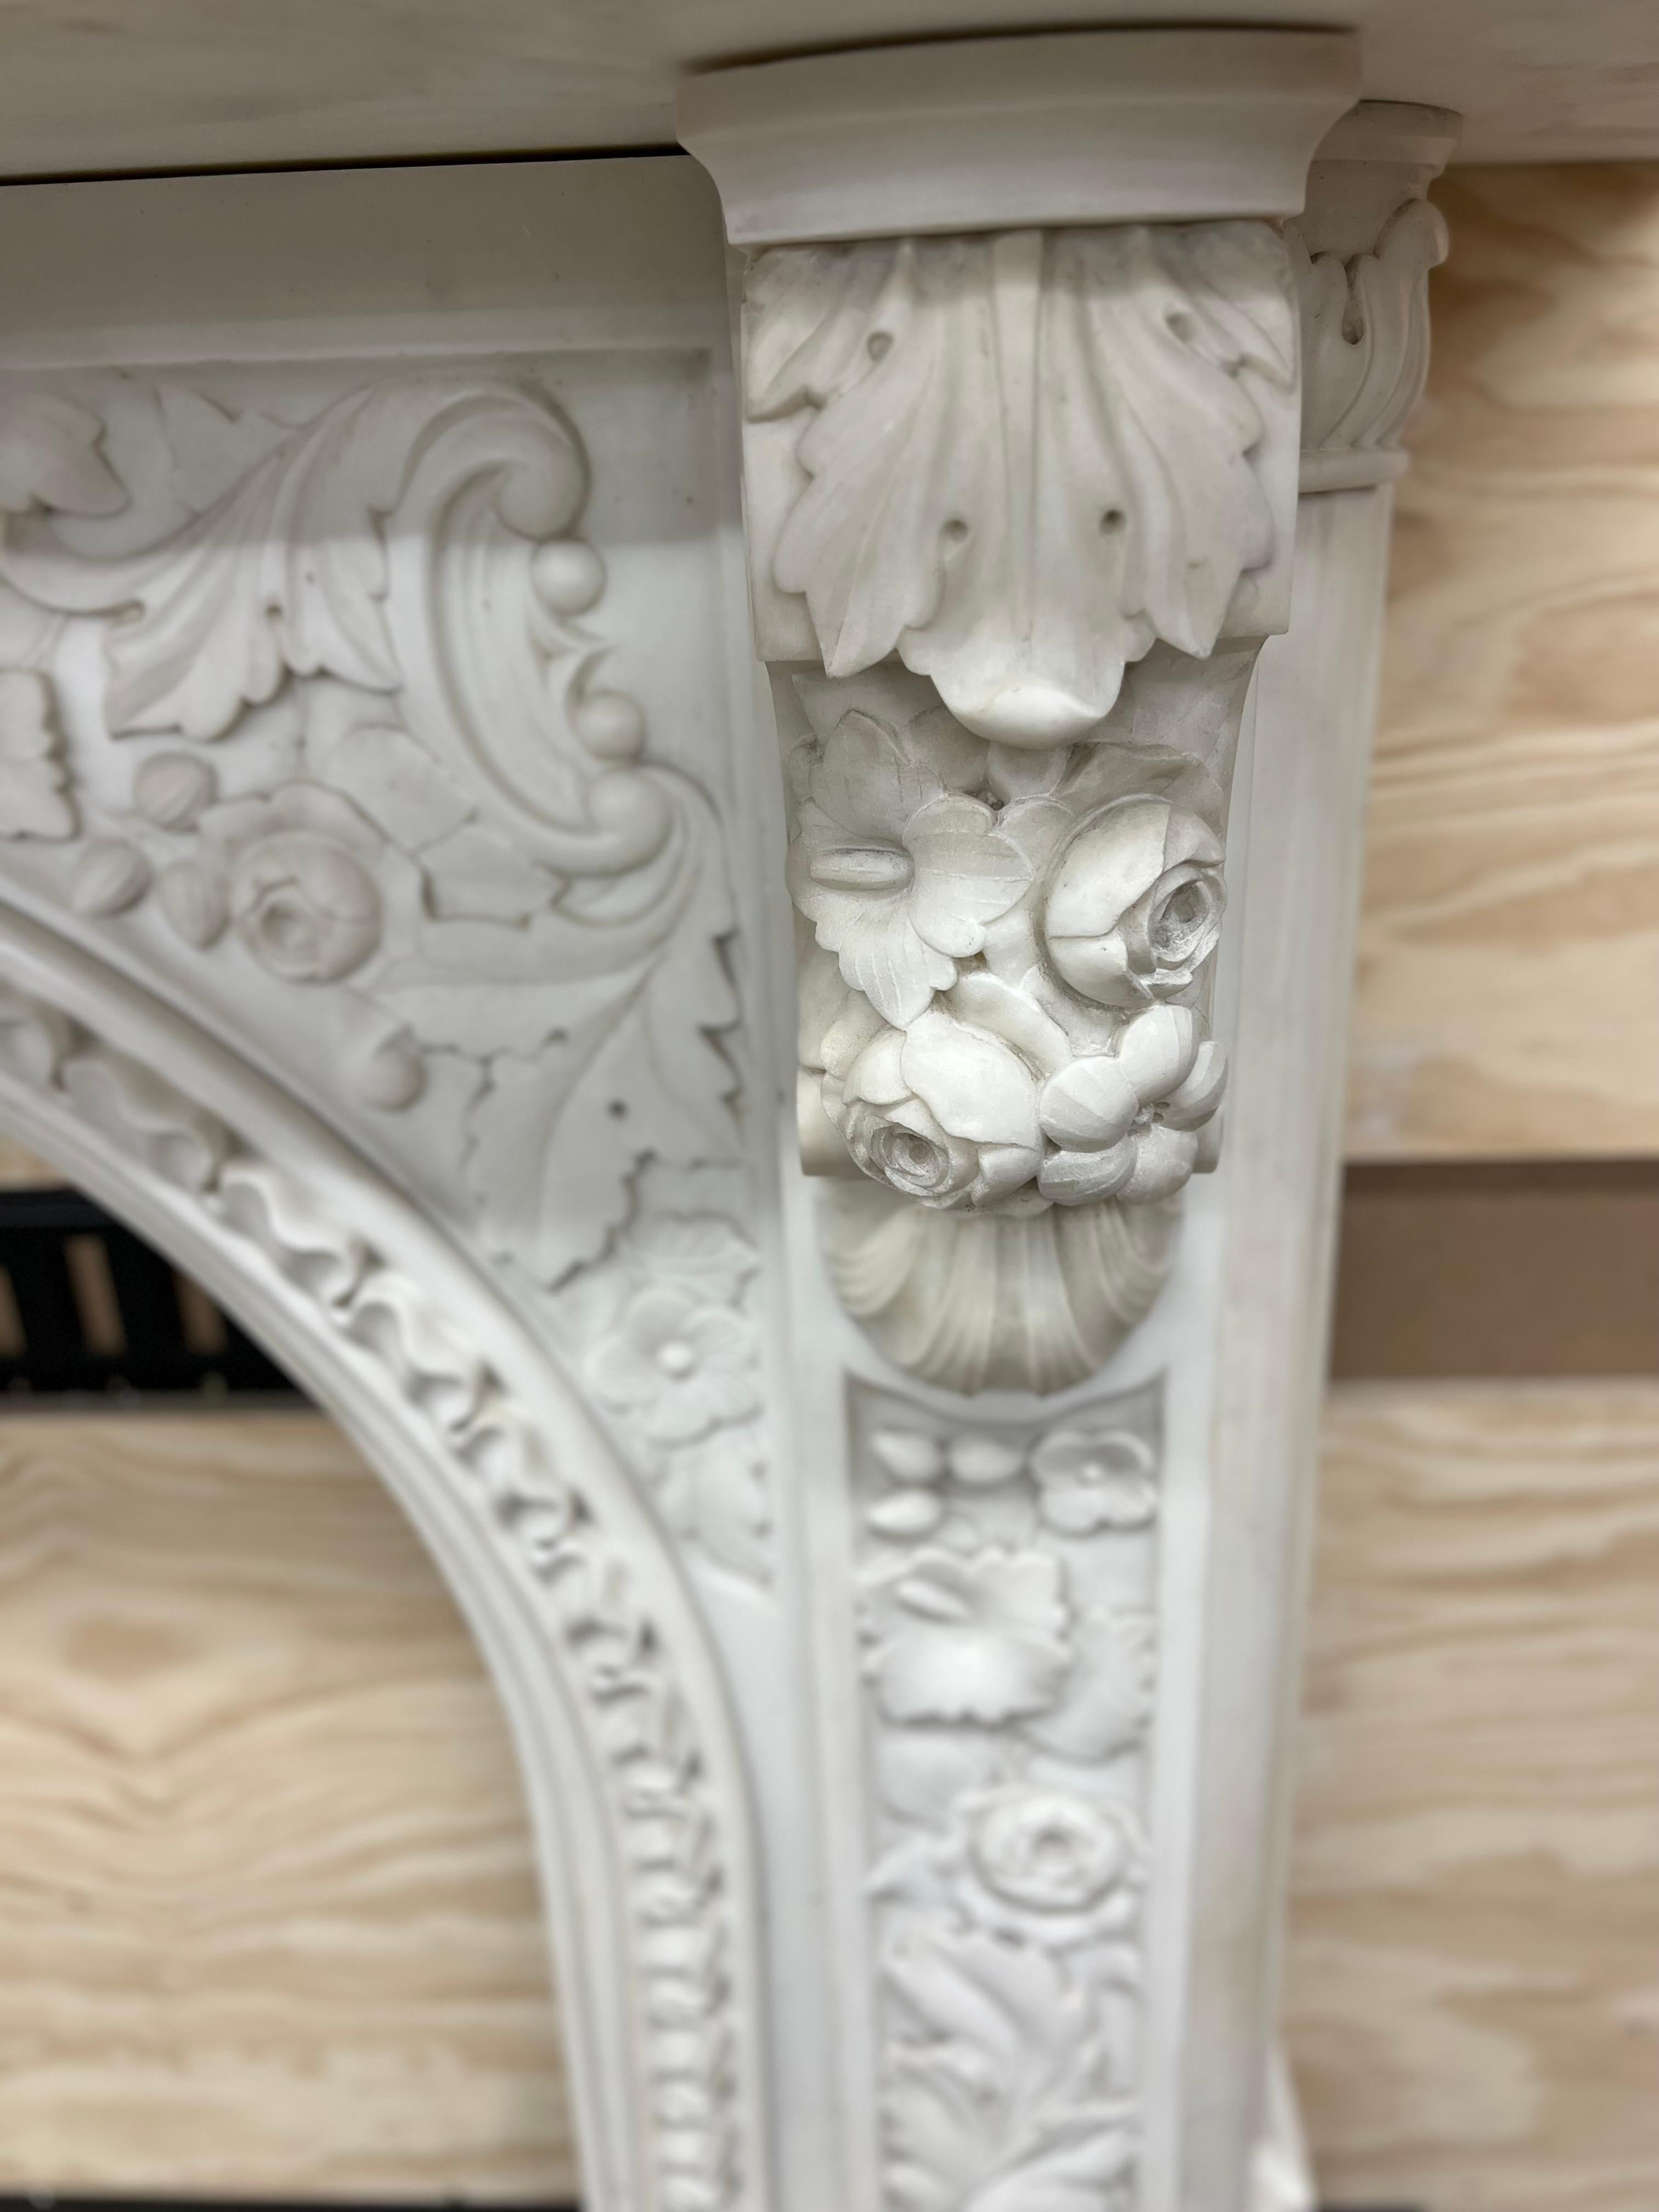 Cheminée victorienne arquée vers 1860, sculptée en marbre Statuaire, avec une ouverture de foyer conçue pour accueillir une grille de registre, avec une sculpture de feuillage abondante sur les panneaux de jambage et de frise, répétée dans les